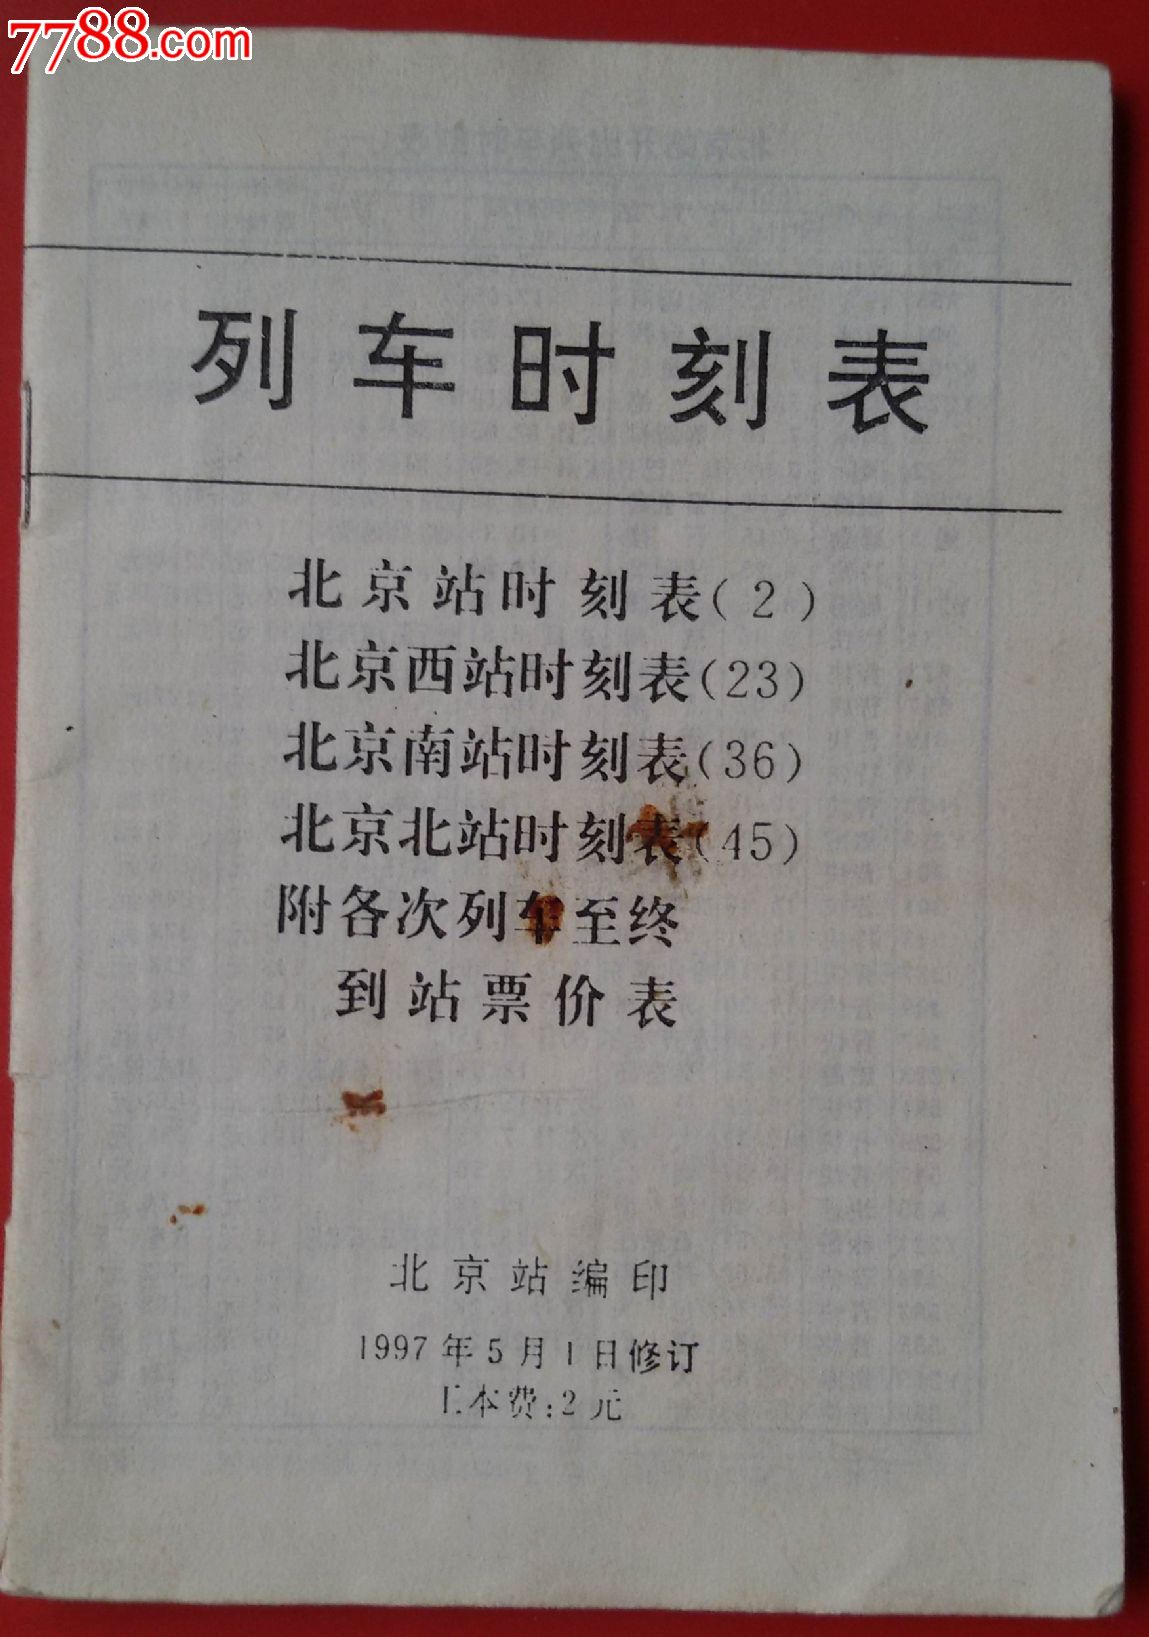 1997年北京站《列车时刻表》